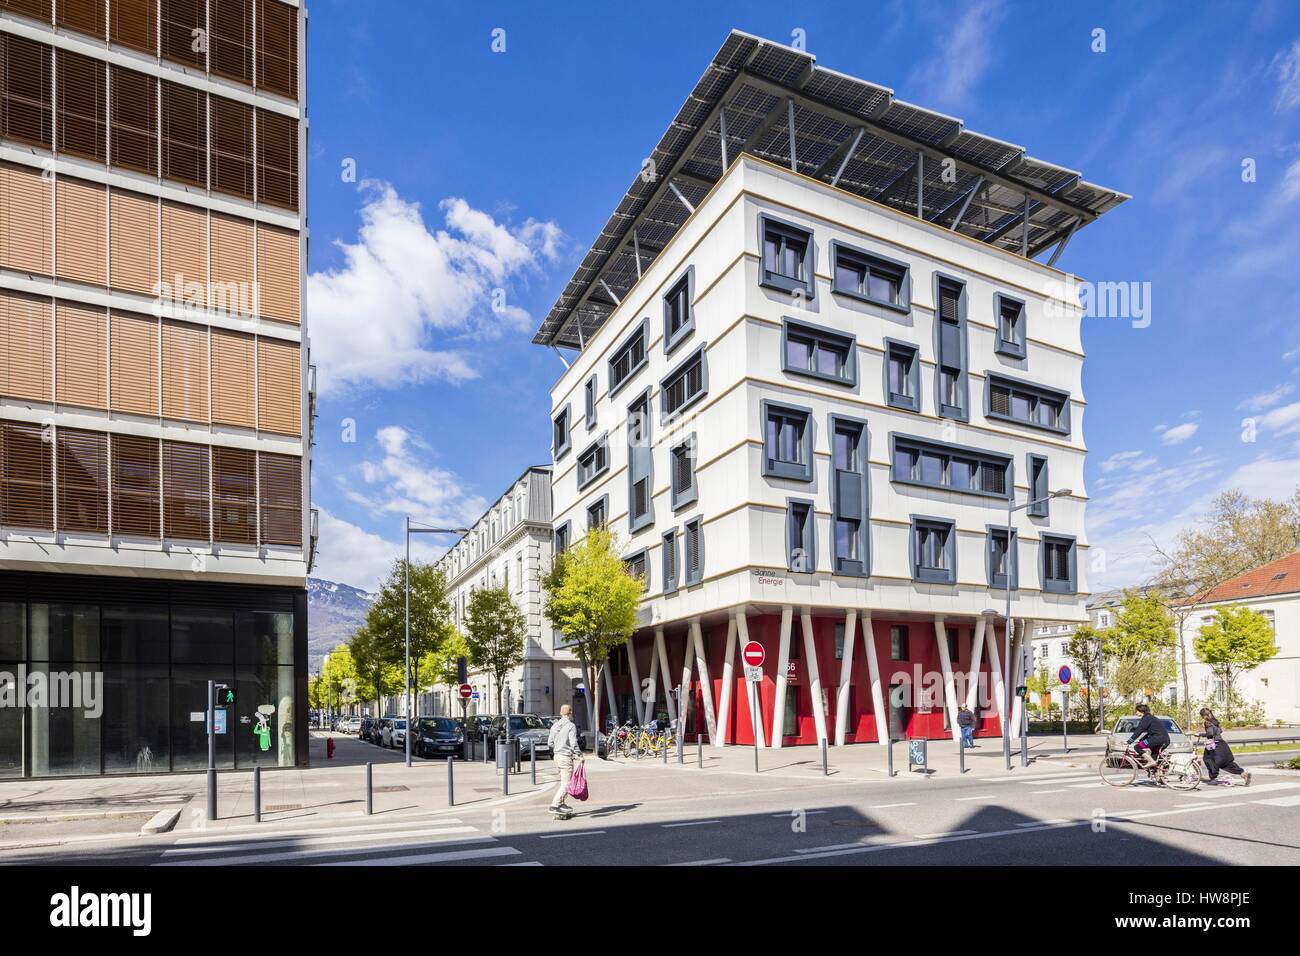 France, Isère, Grenoble, l'Écodistrict de Bonne, Grenoble a reçu le Grand Prix national 2009 de l'Écodistrict pour la ZAC de Bonne, vue de l'immeuble de bureaux Une bonne énergie avec l'énergie positive des architectes Charon et Rampillon Banque D'Images